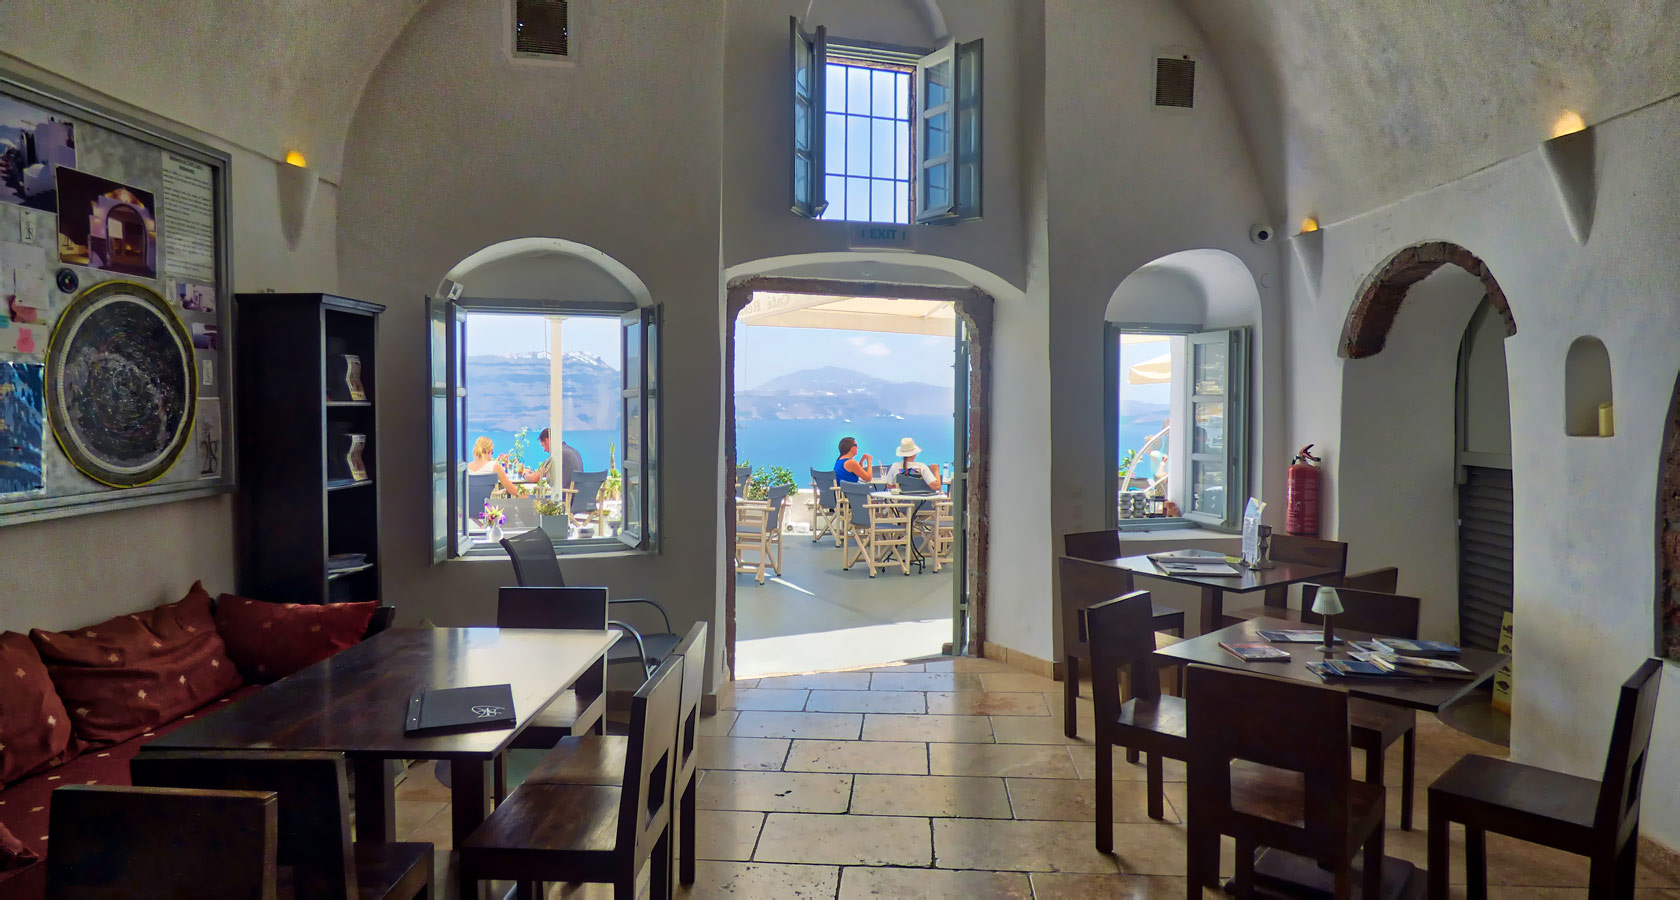 218° Café Restaurant –  Interior of the Restaurant